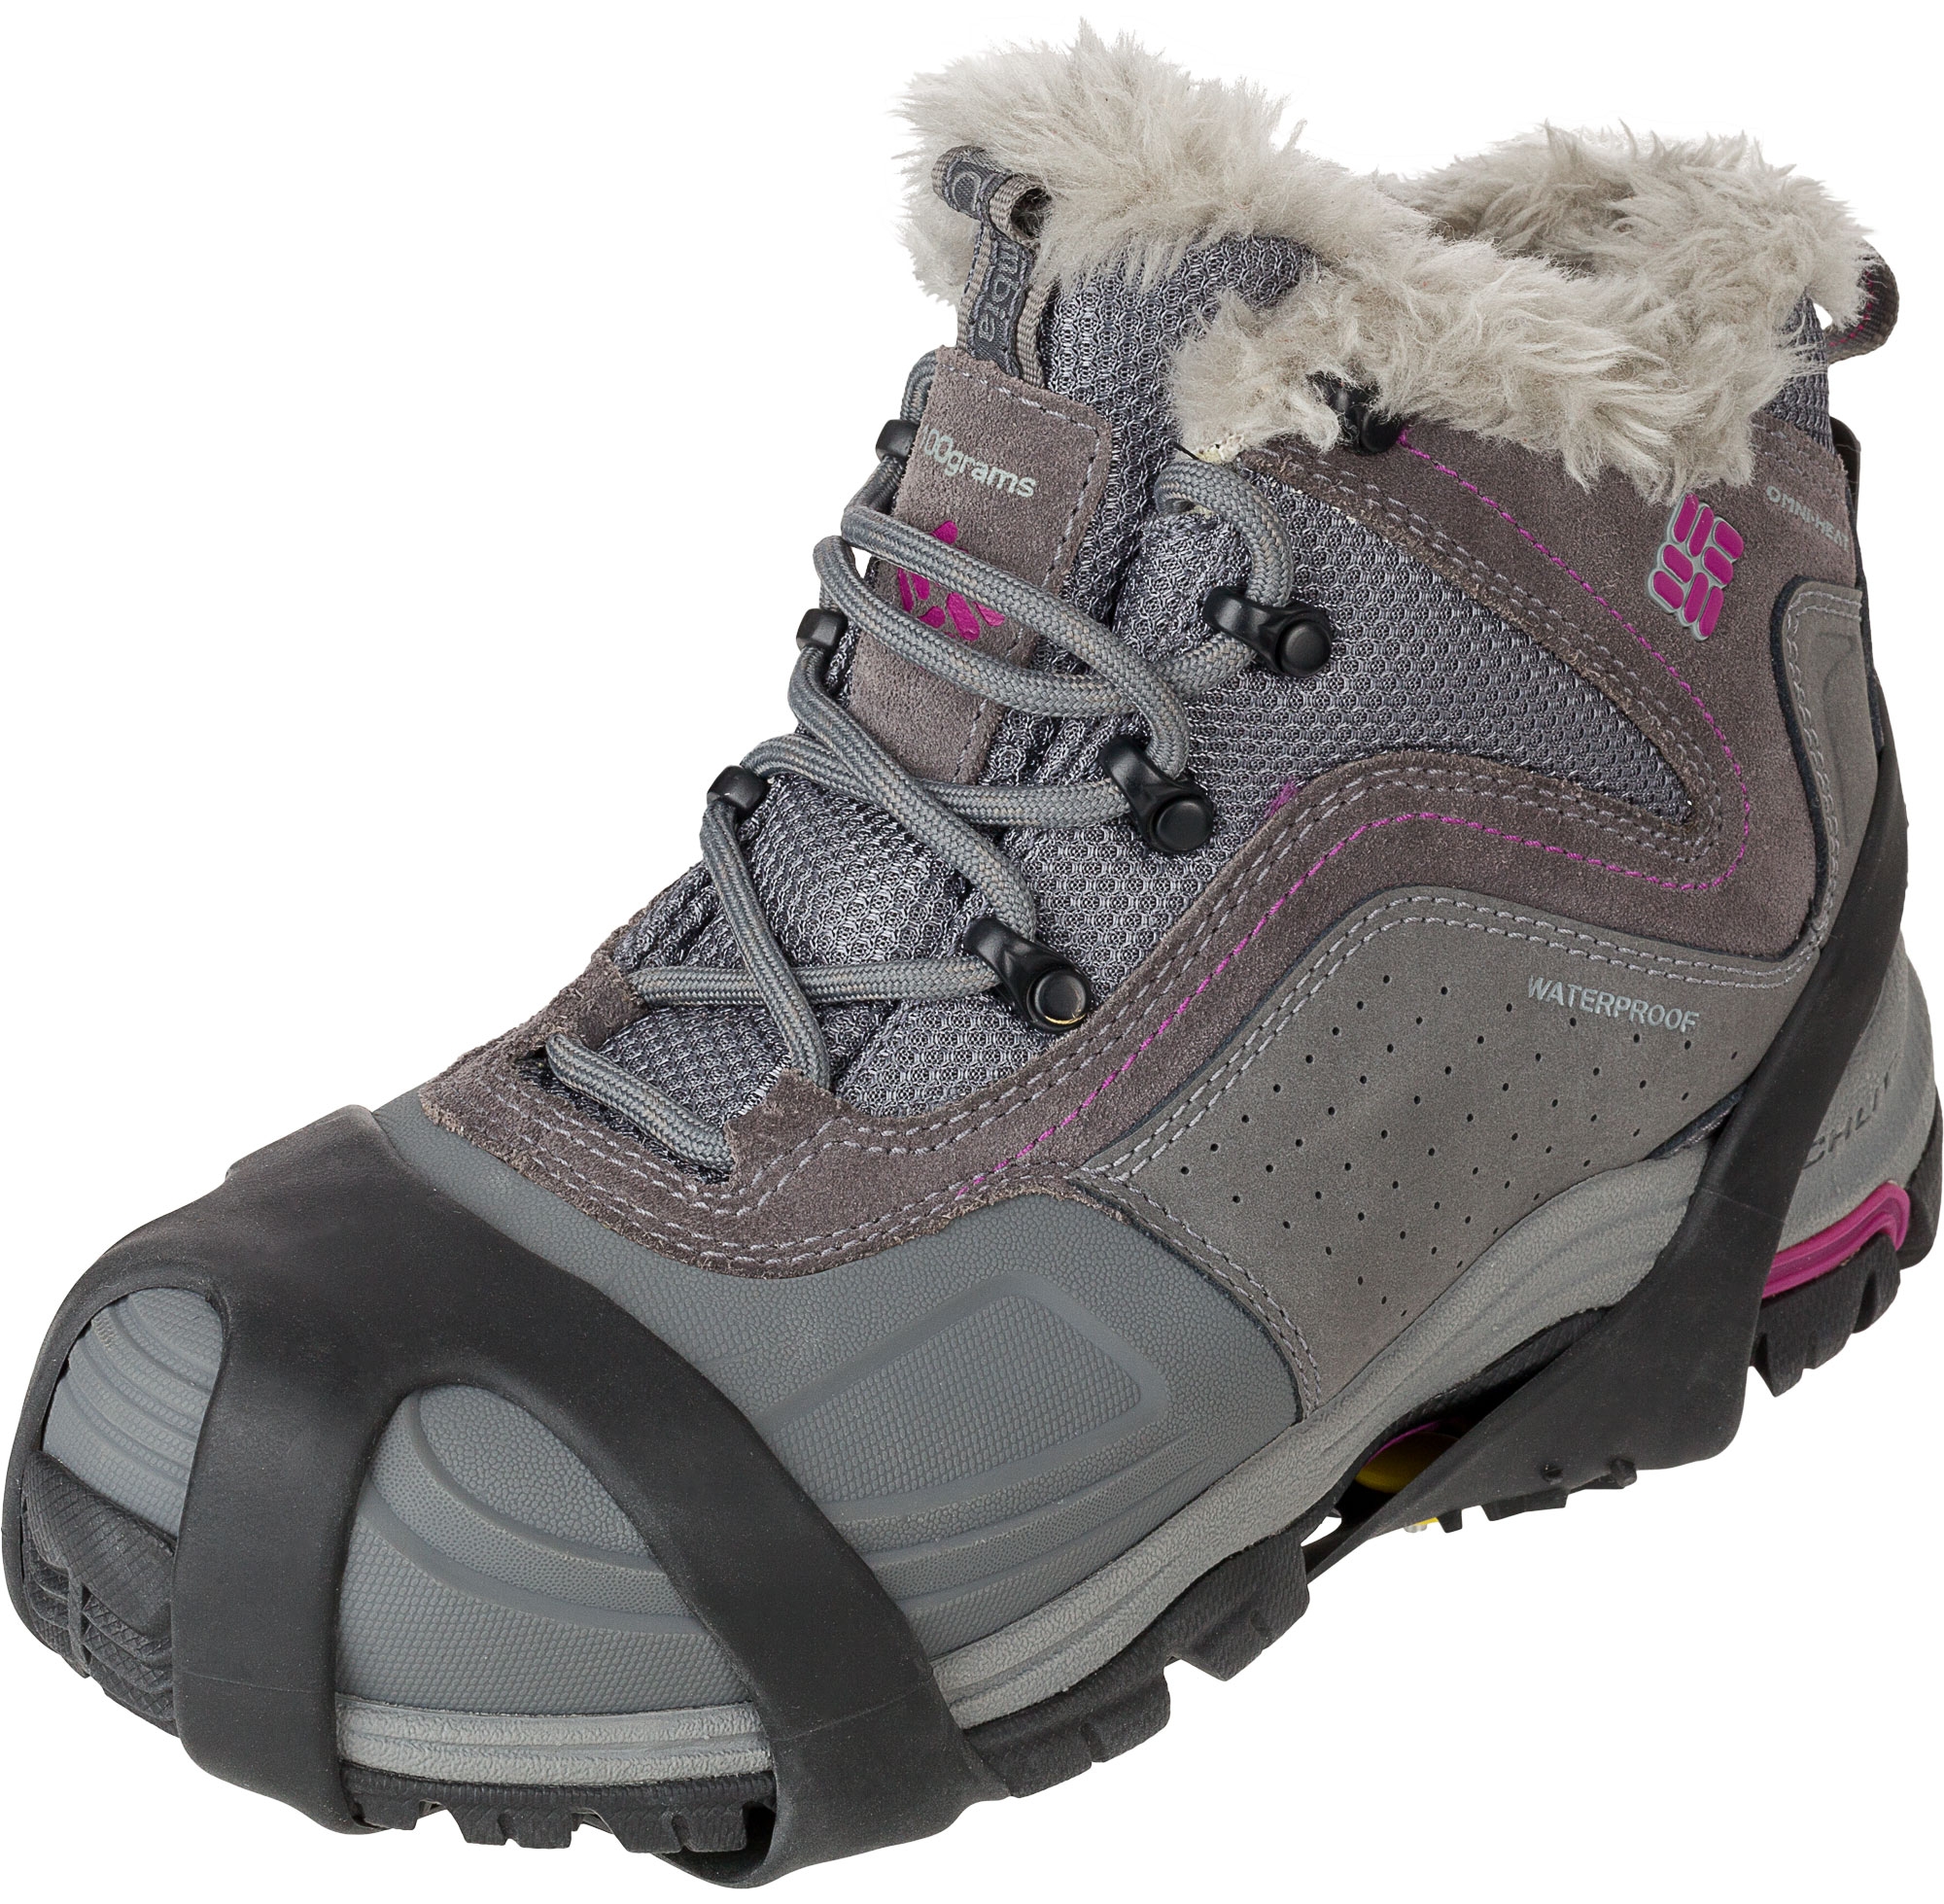 Насадки на підошву взуття для ходьби снігом і льодом Nordway N2702